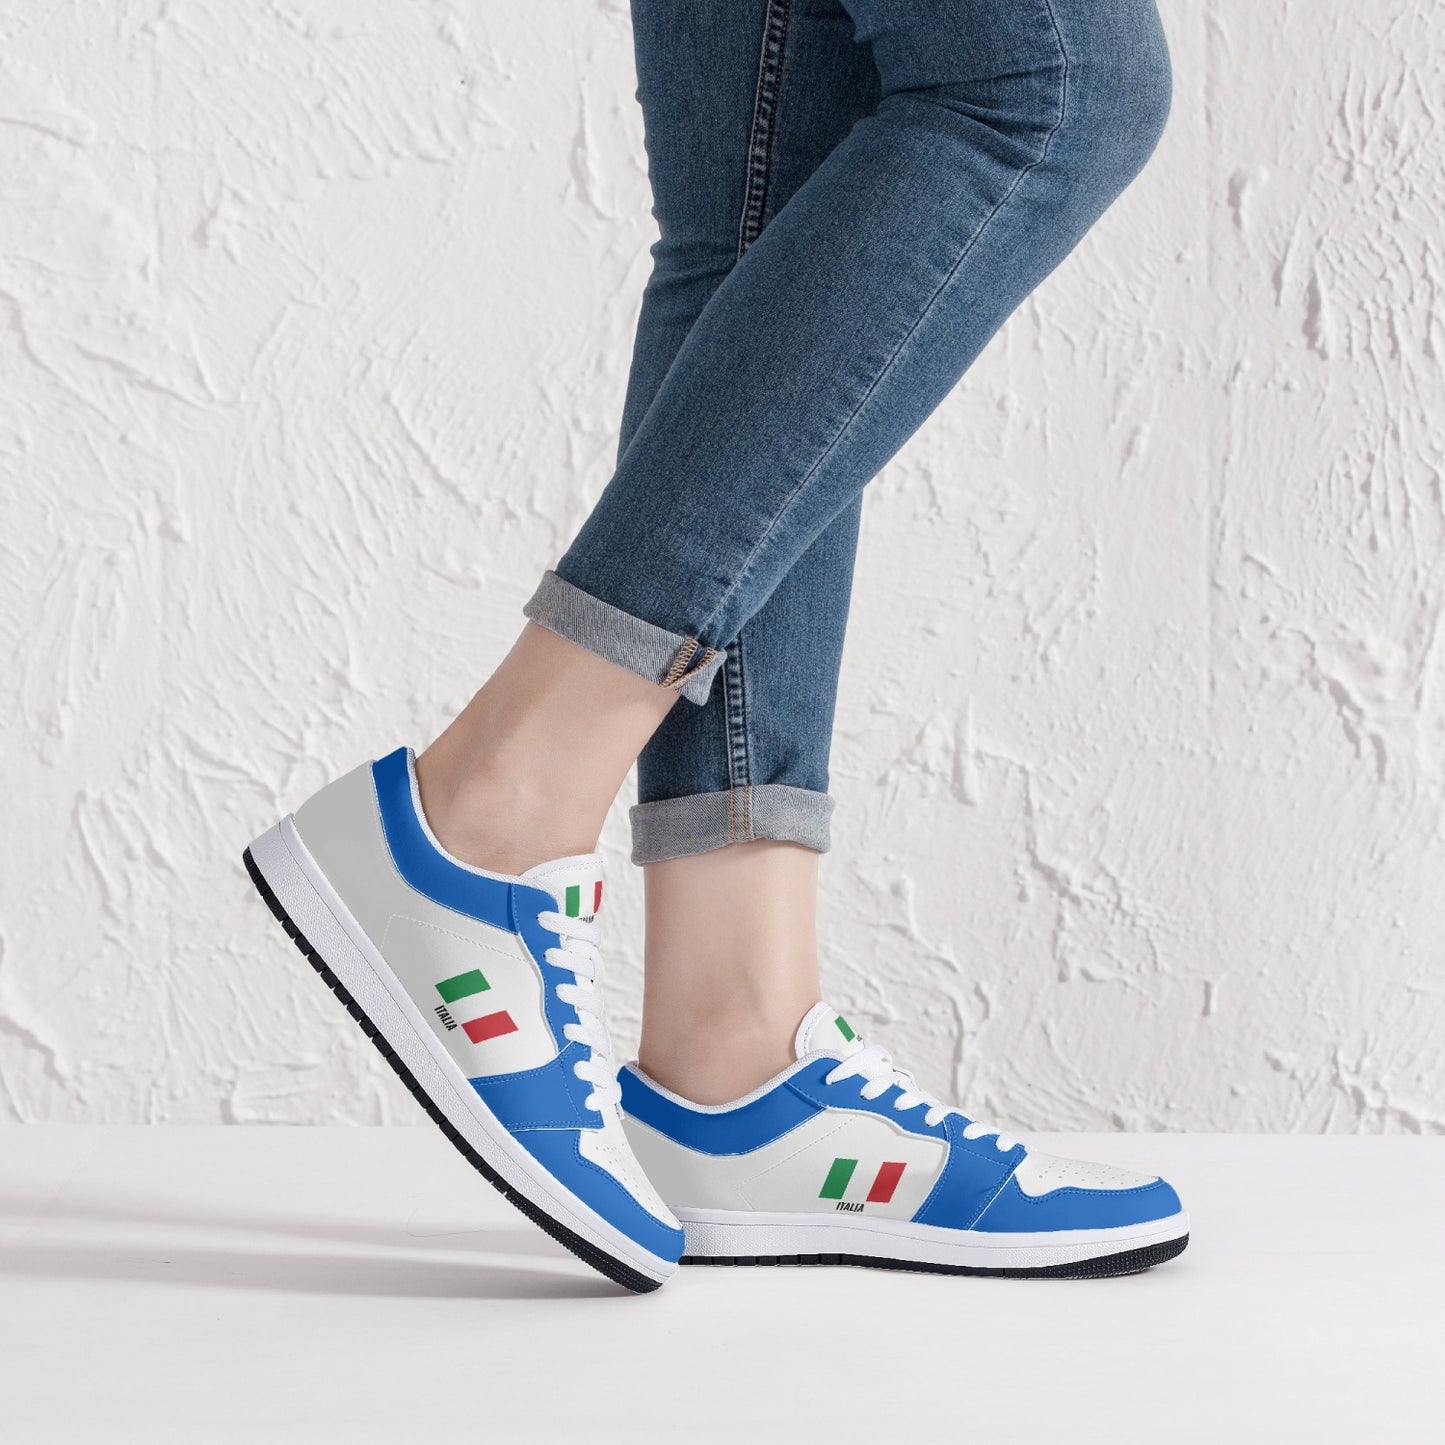 Shoes Sneakers Italia - White/Azure - Men's sizes